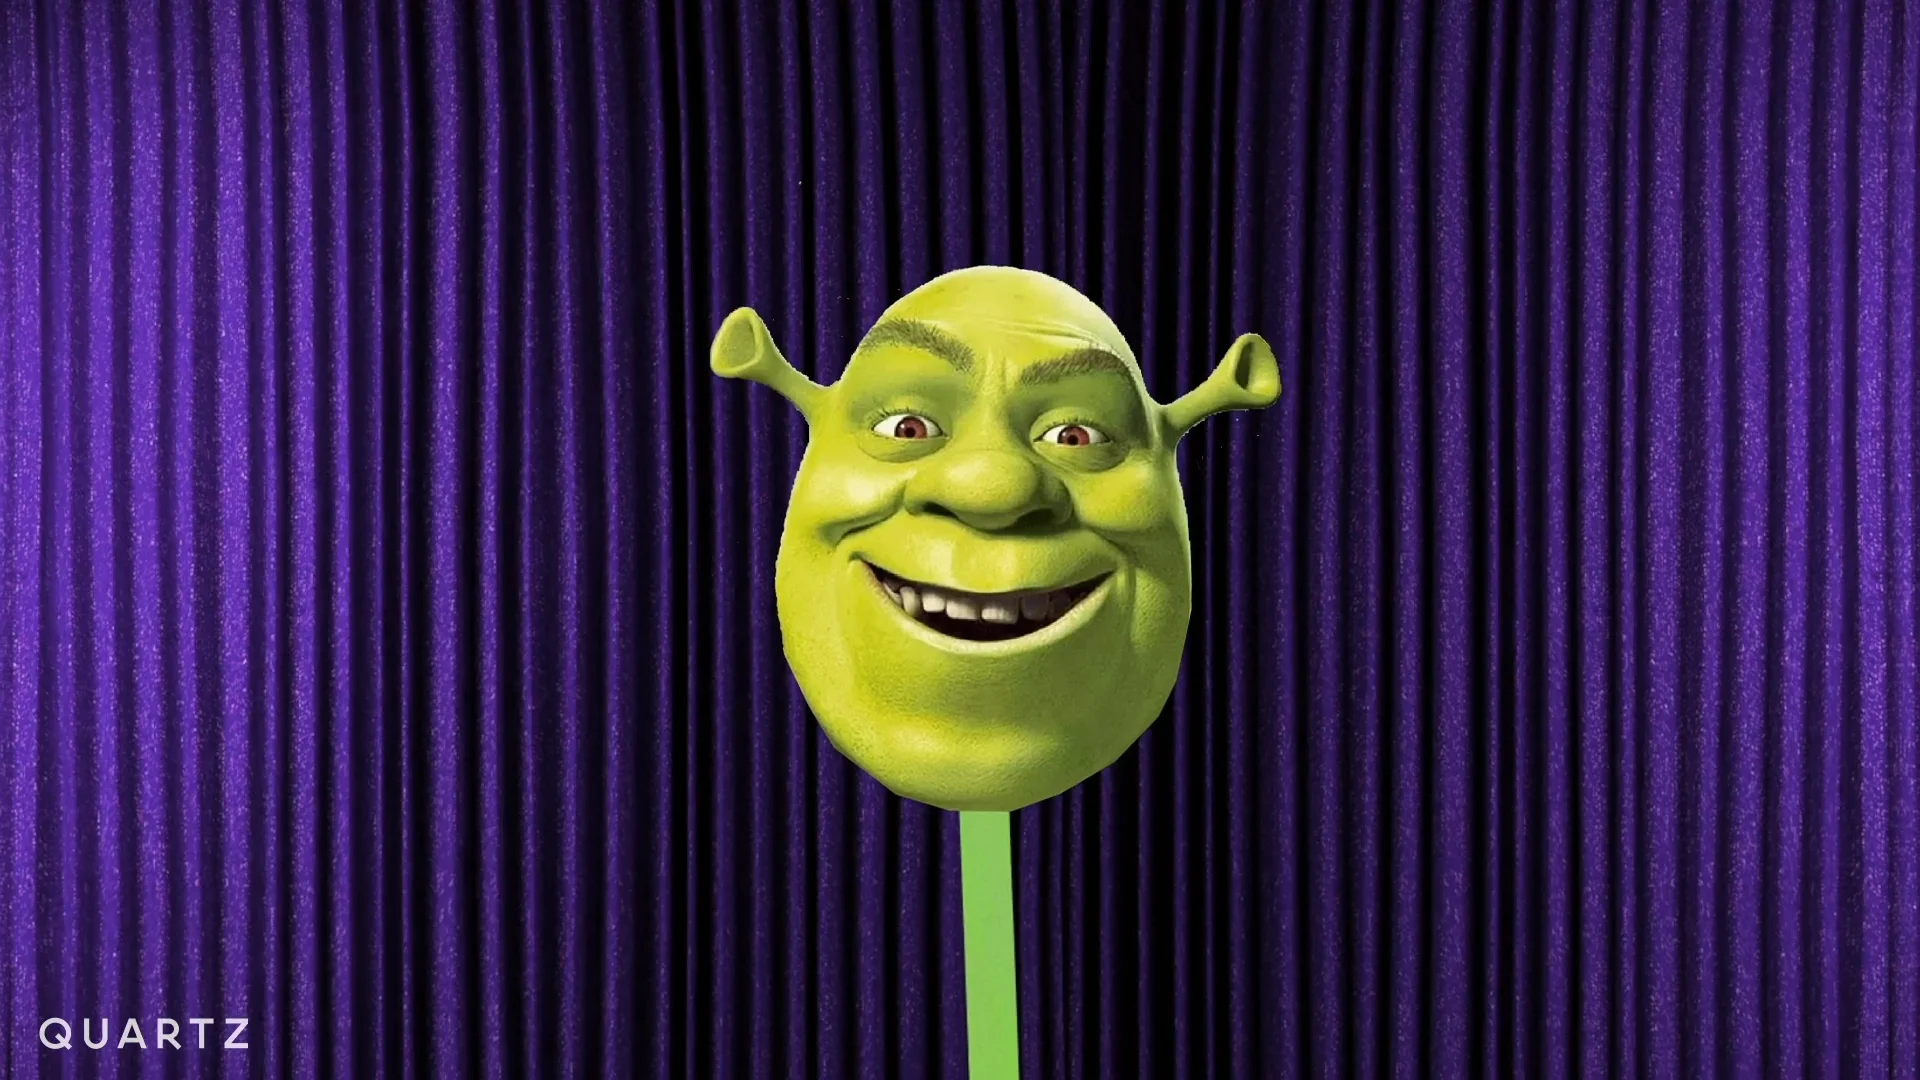 Shrek, , Shrek Meme, HD wallpaper